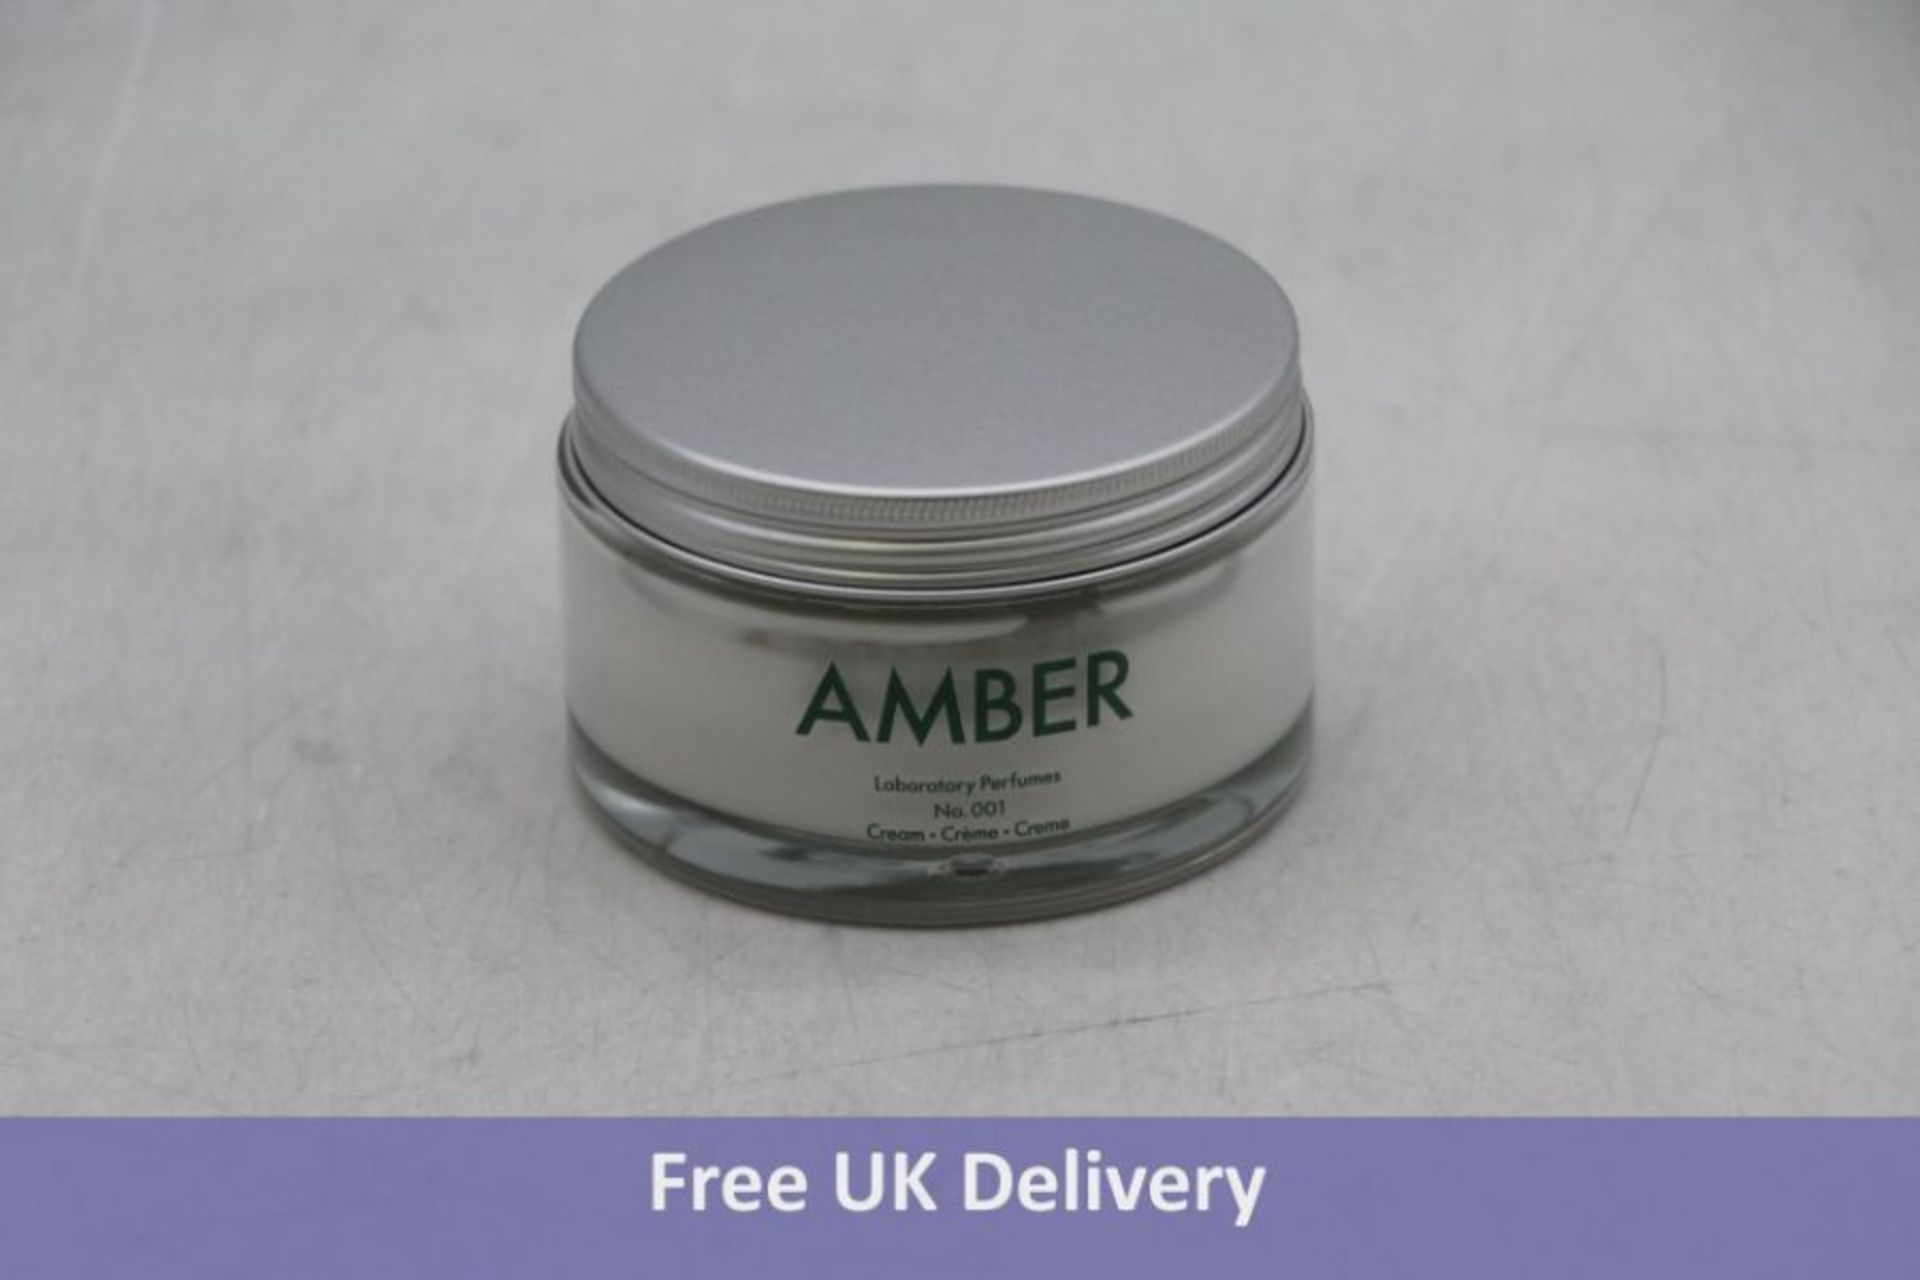 Six Amber Laboratory Perfumes No 001 Cream, White, 200ml